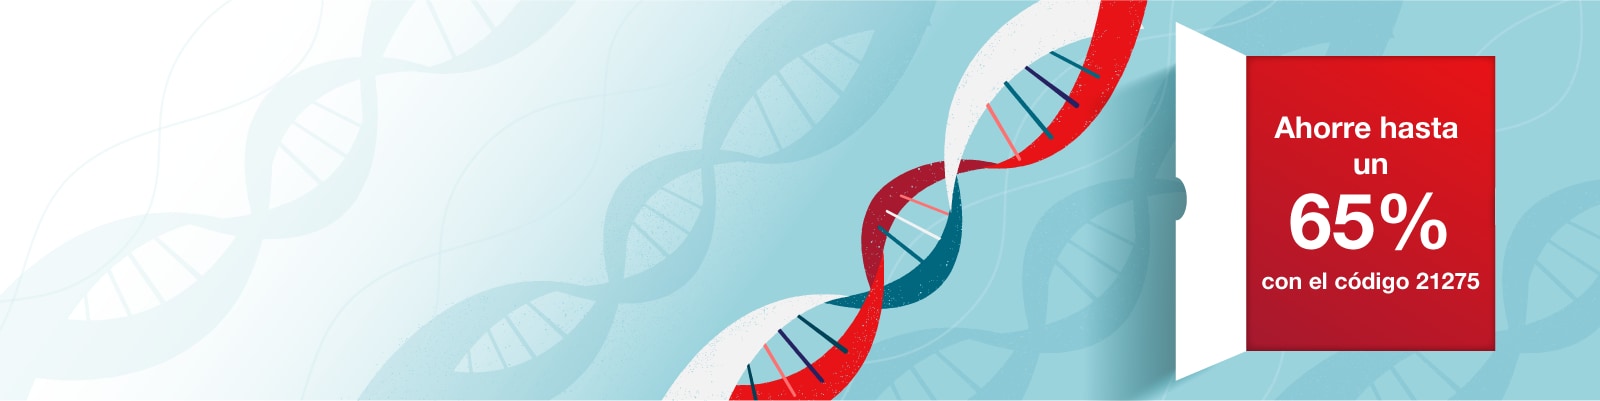 La estructura del ADN banner